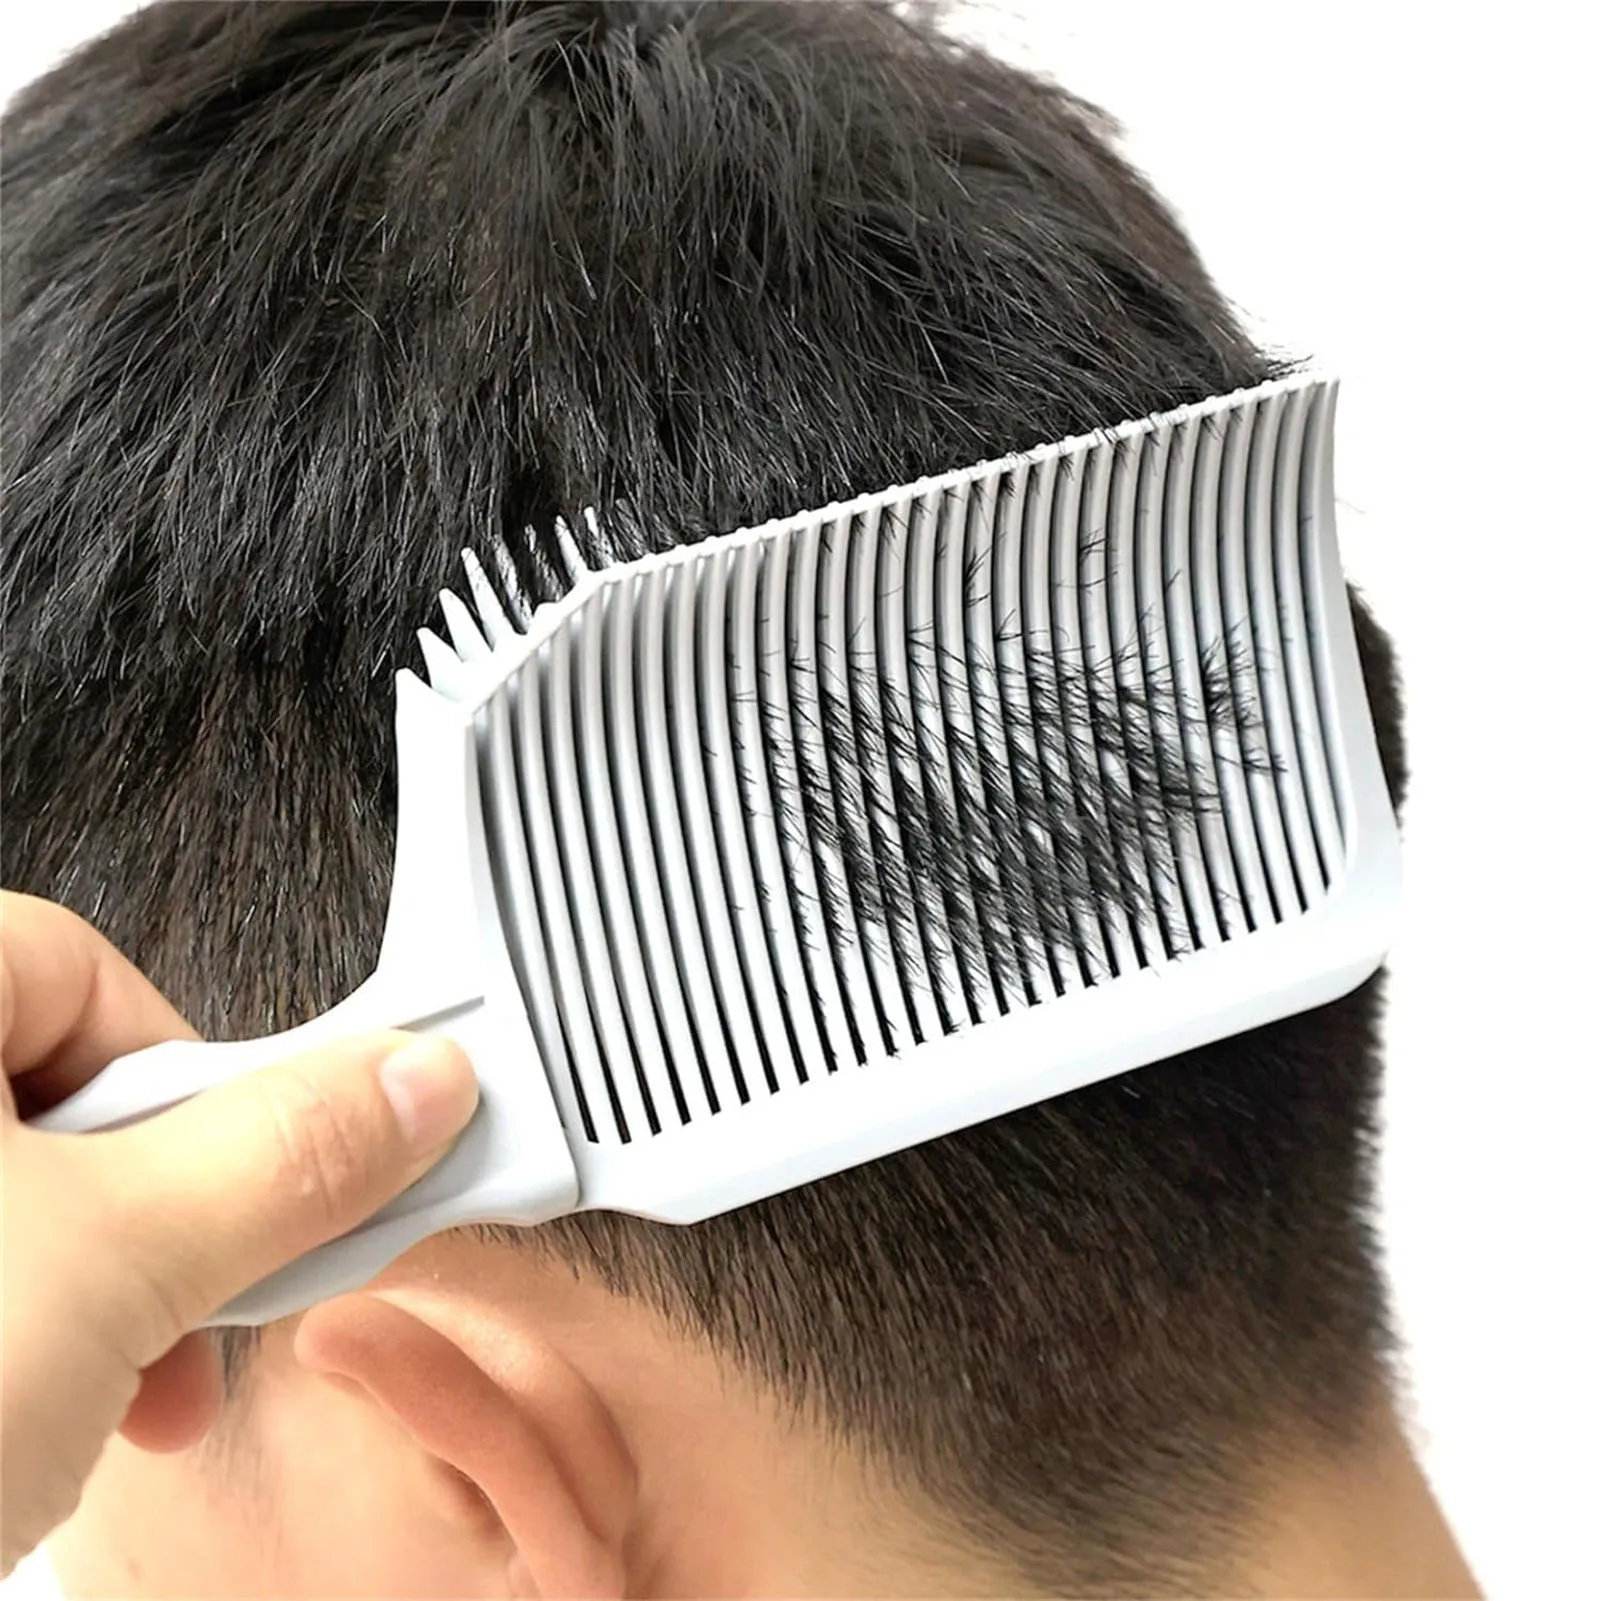 

Парикмахерские расчески Профессиональные парикмахерские клипсы для растушевки плоские расчески для стрижки волос для мужчин термостойкие Инструменты для укладки в салоне